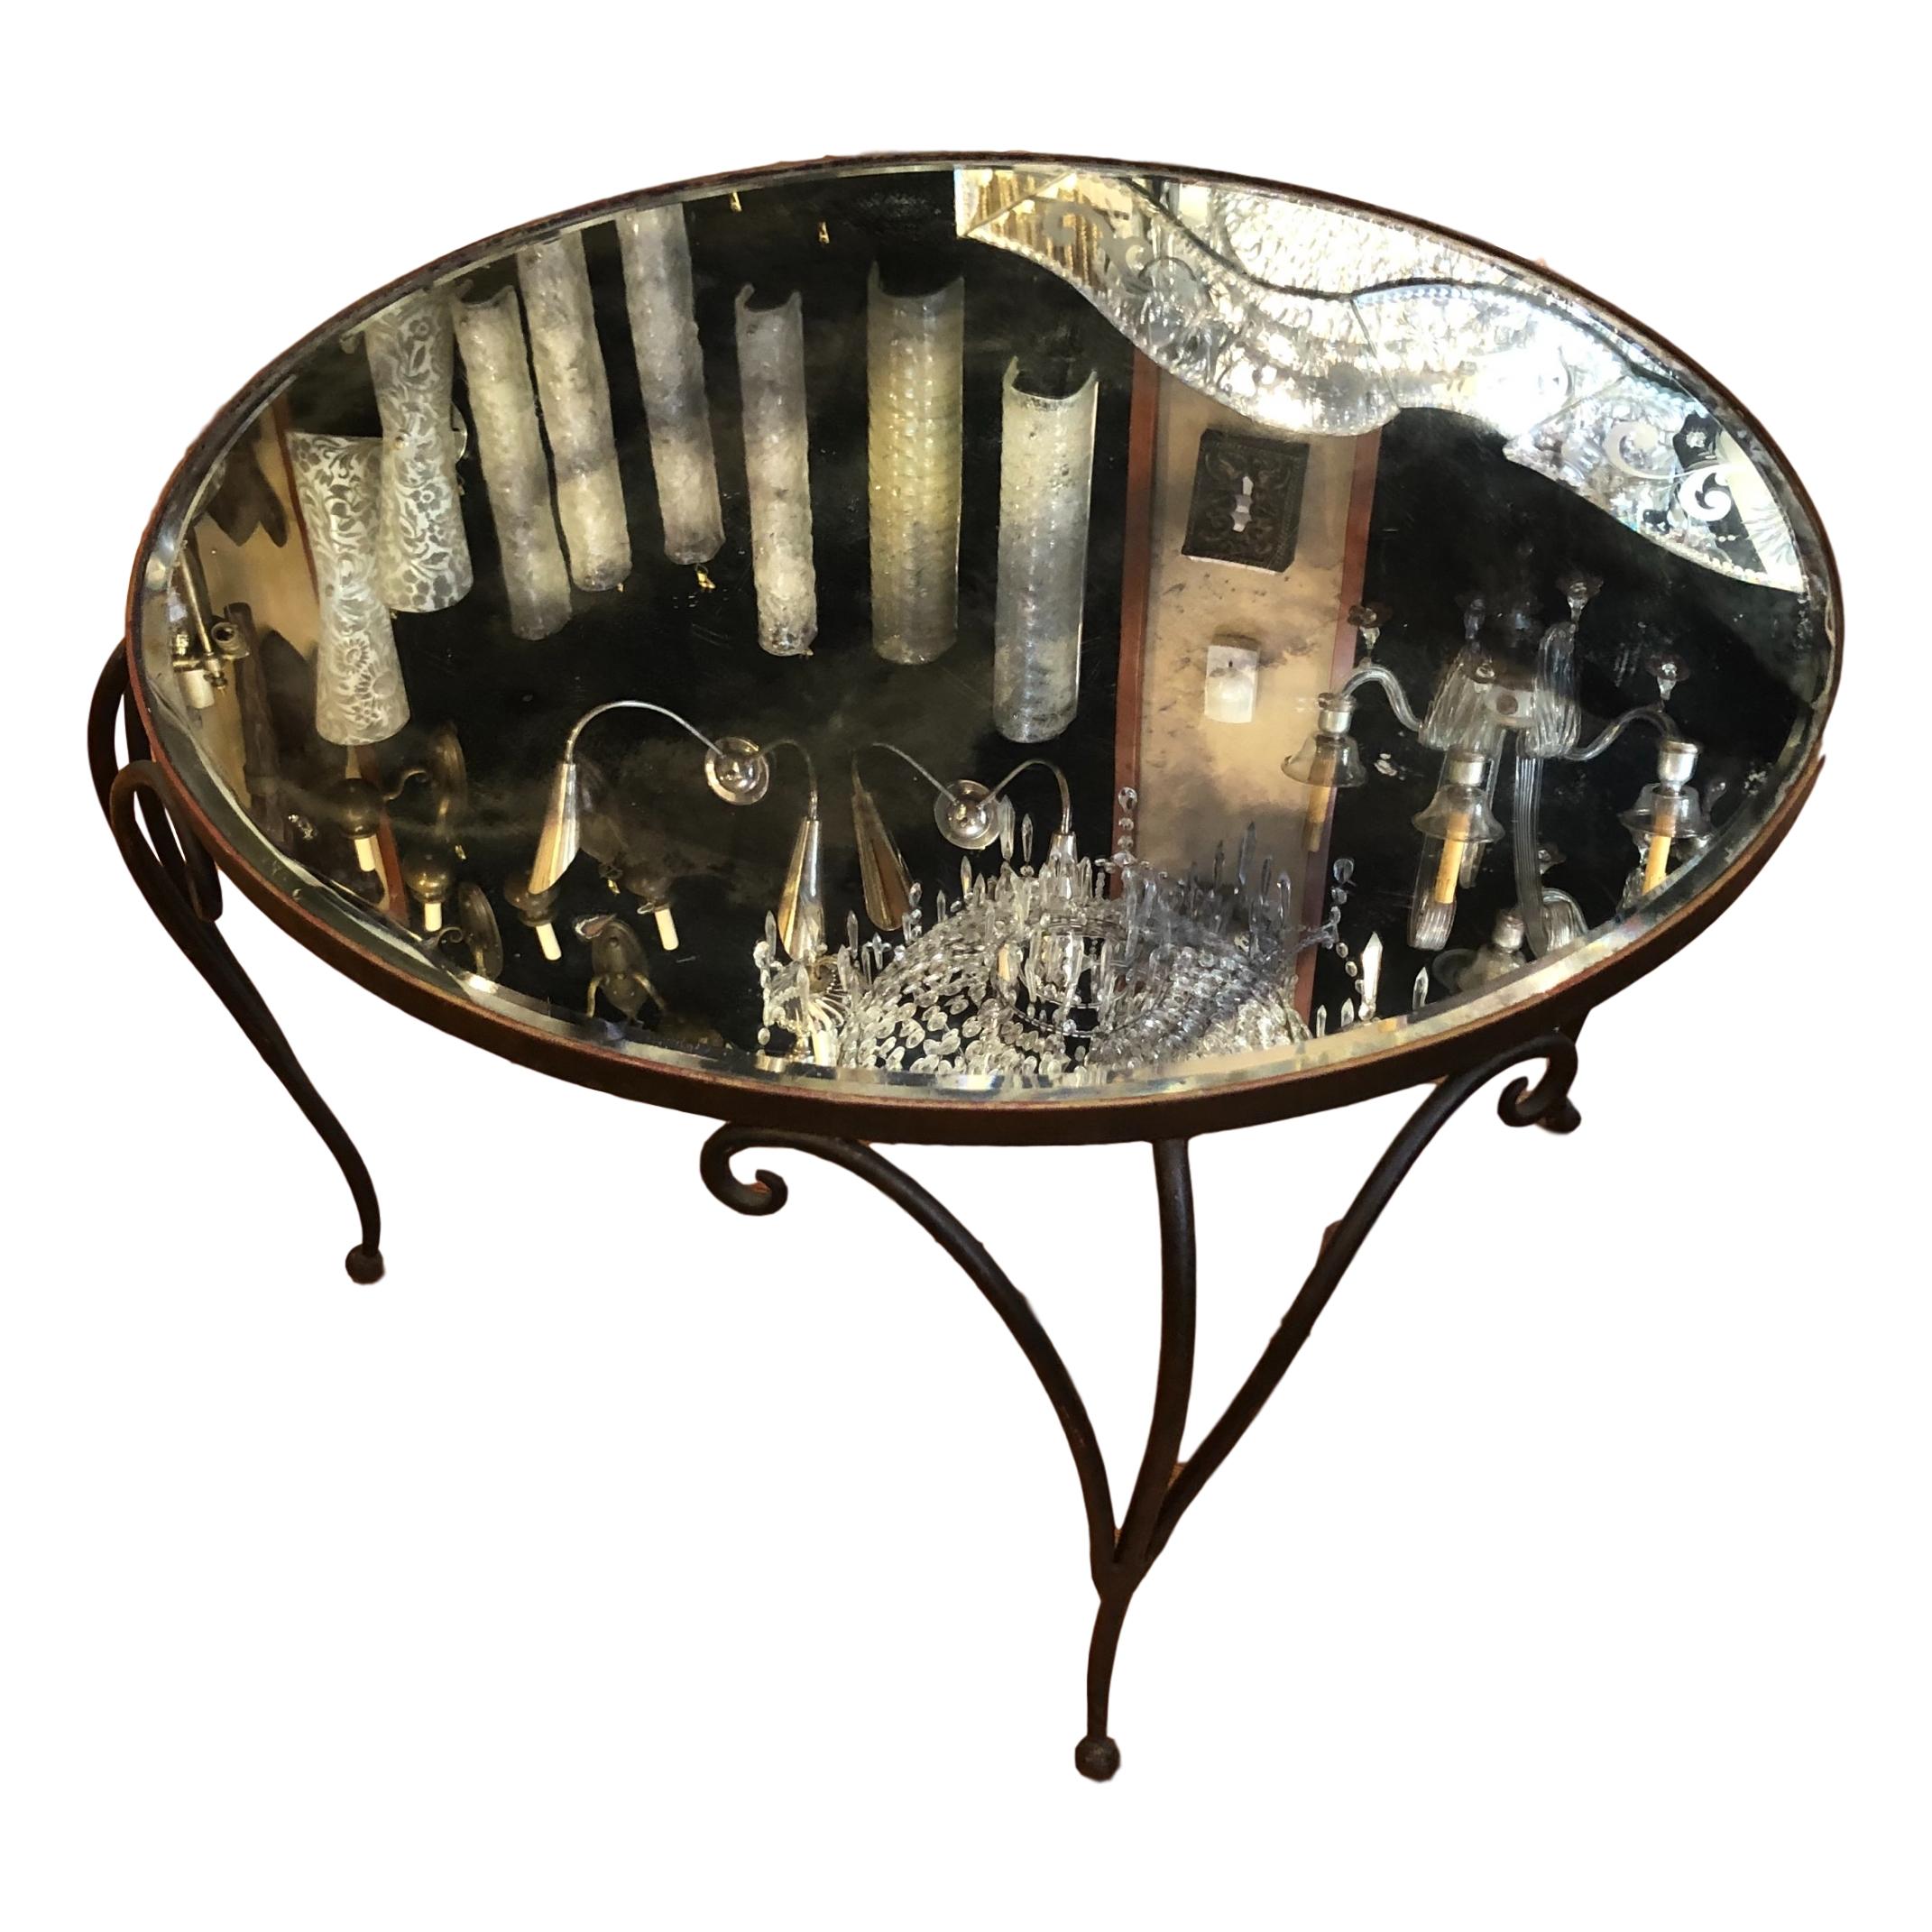 Table basse en fer forgé français des années 1930 avec plateau rond en miroir.

Mesures :
Hauteur : 18